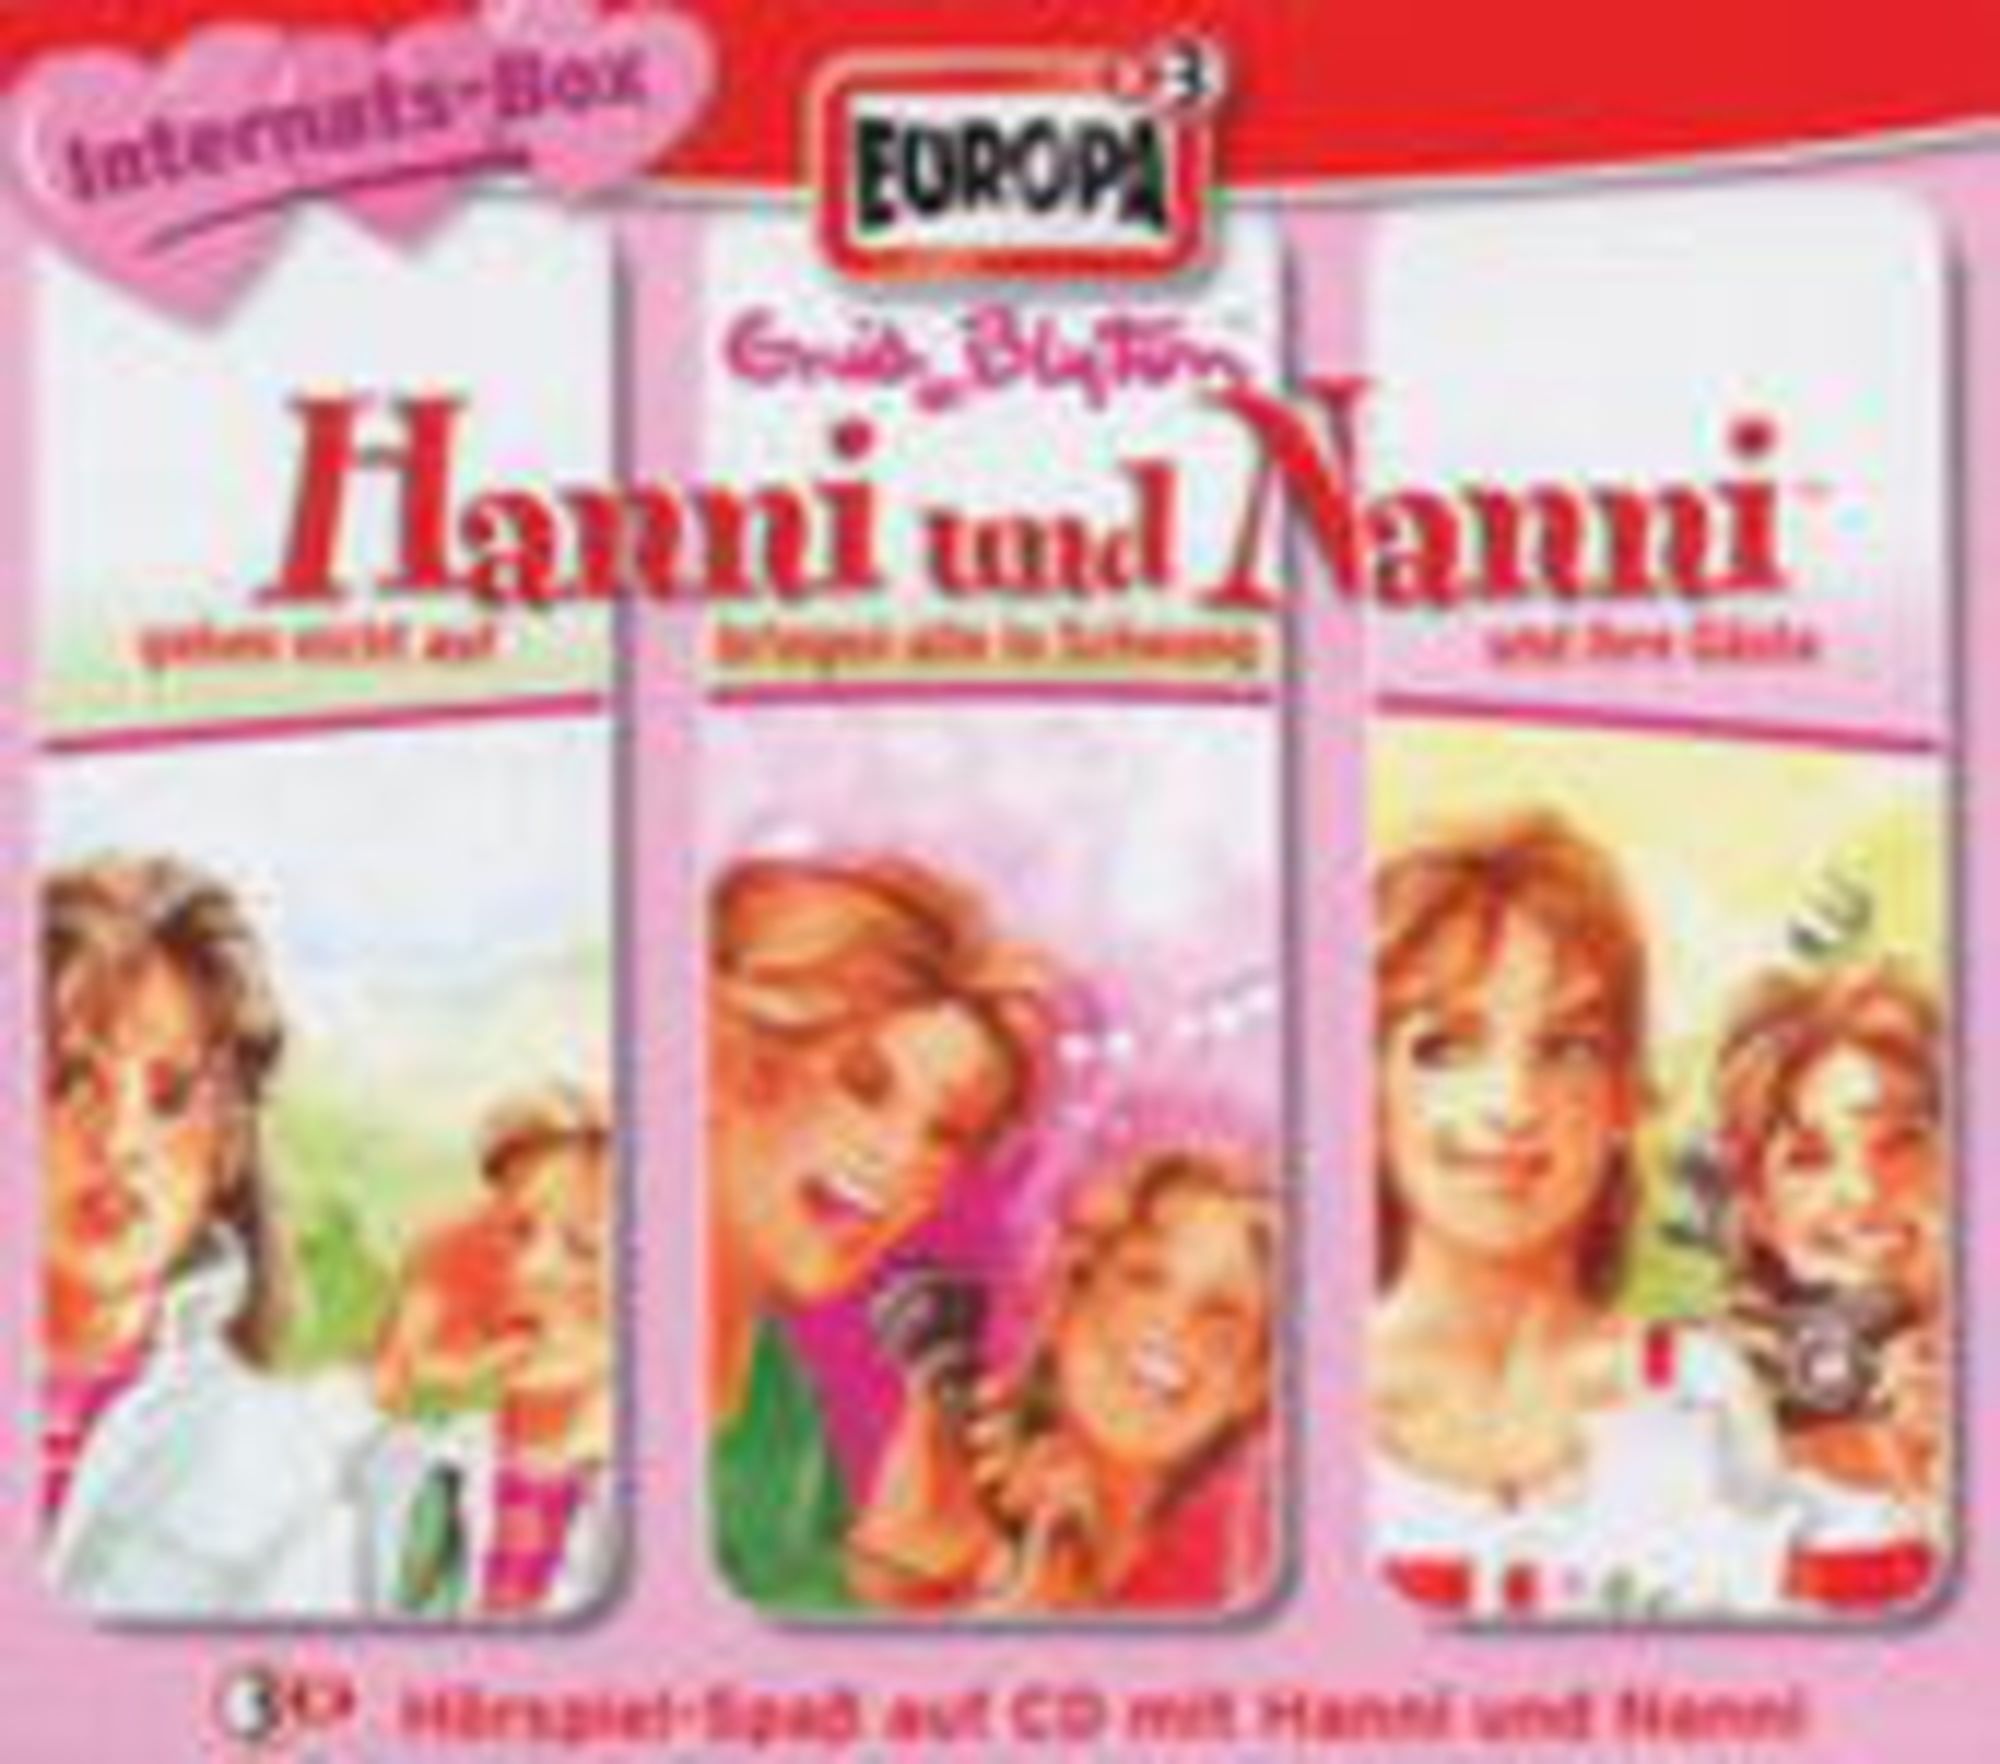 Hanni & Nanni, Folge 70, Schlechte Karten für Hanni und Nanni